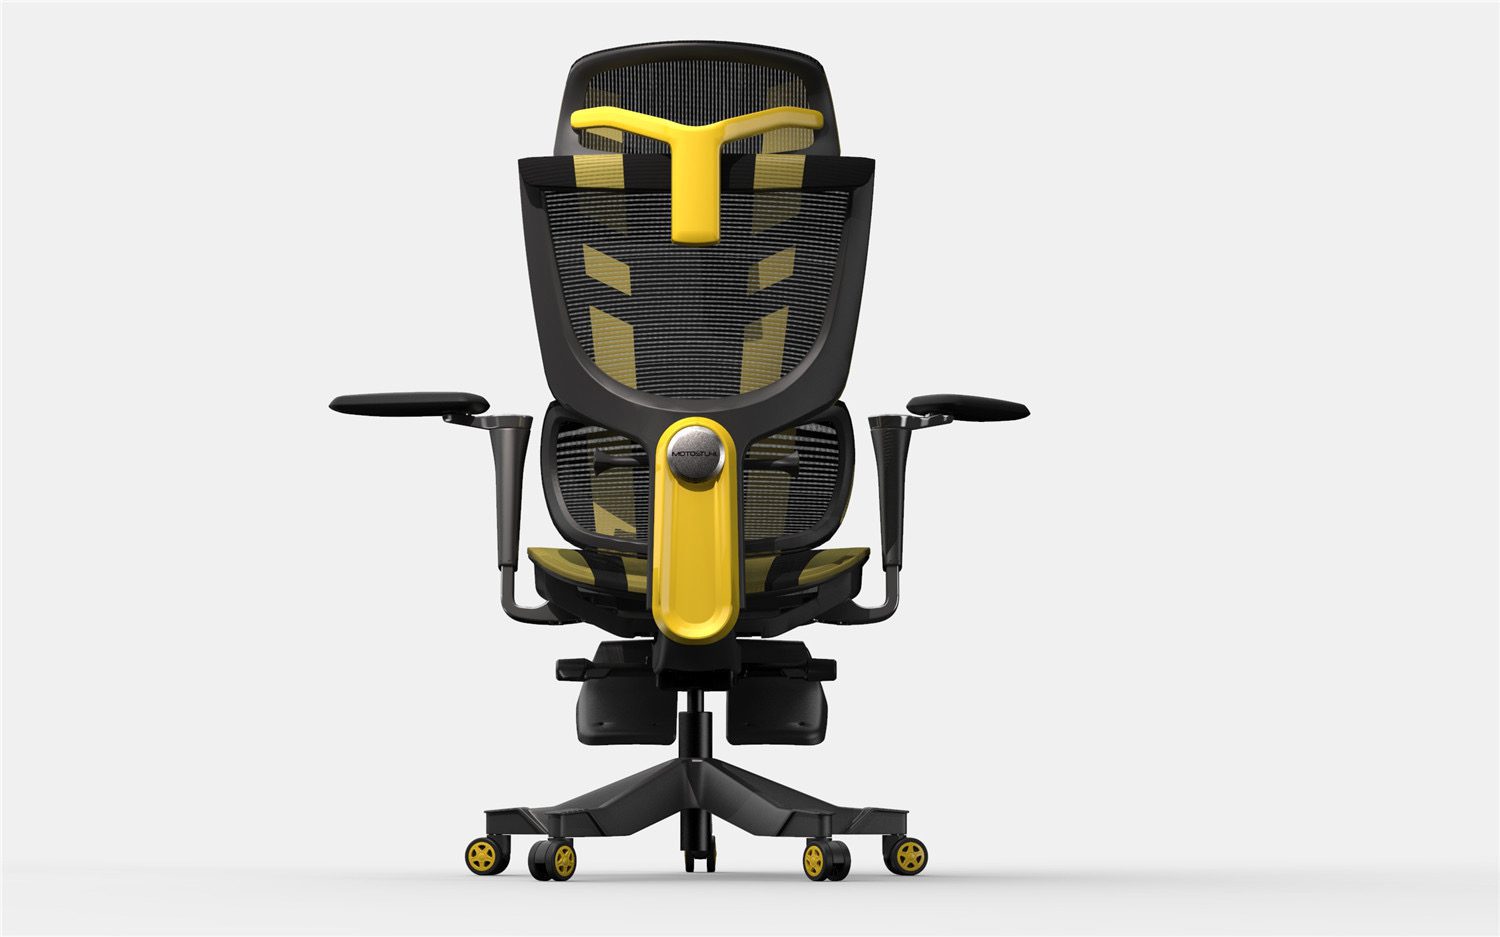 Respaldo reclinable en 180º, reposabrazos 3D y cojines adicionales: esta silla  gaming en oferta ahora cuesta 60 euros menos